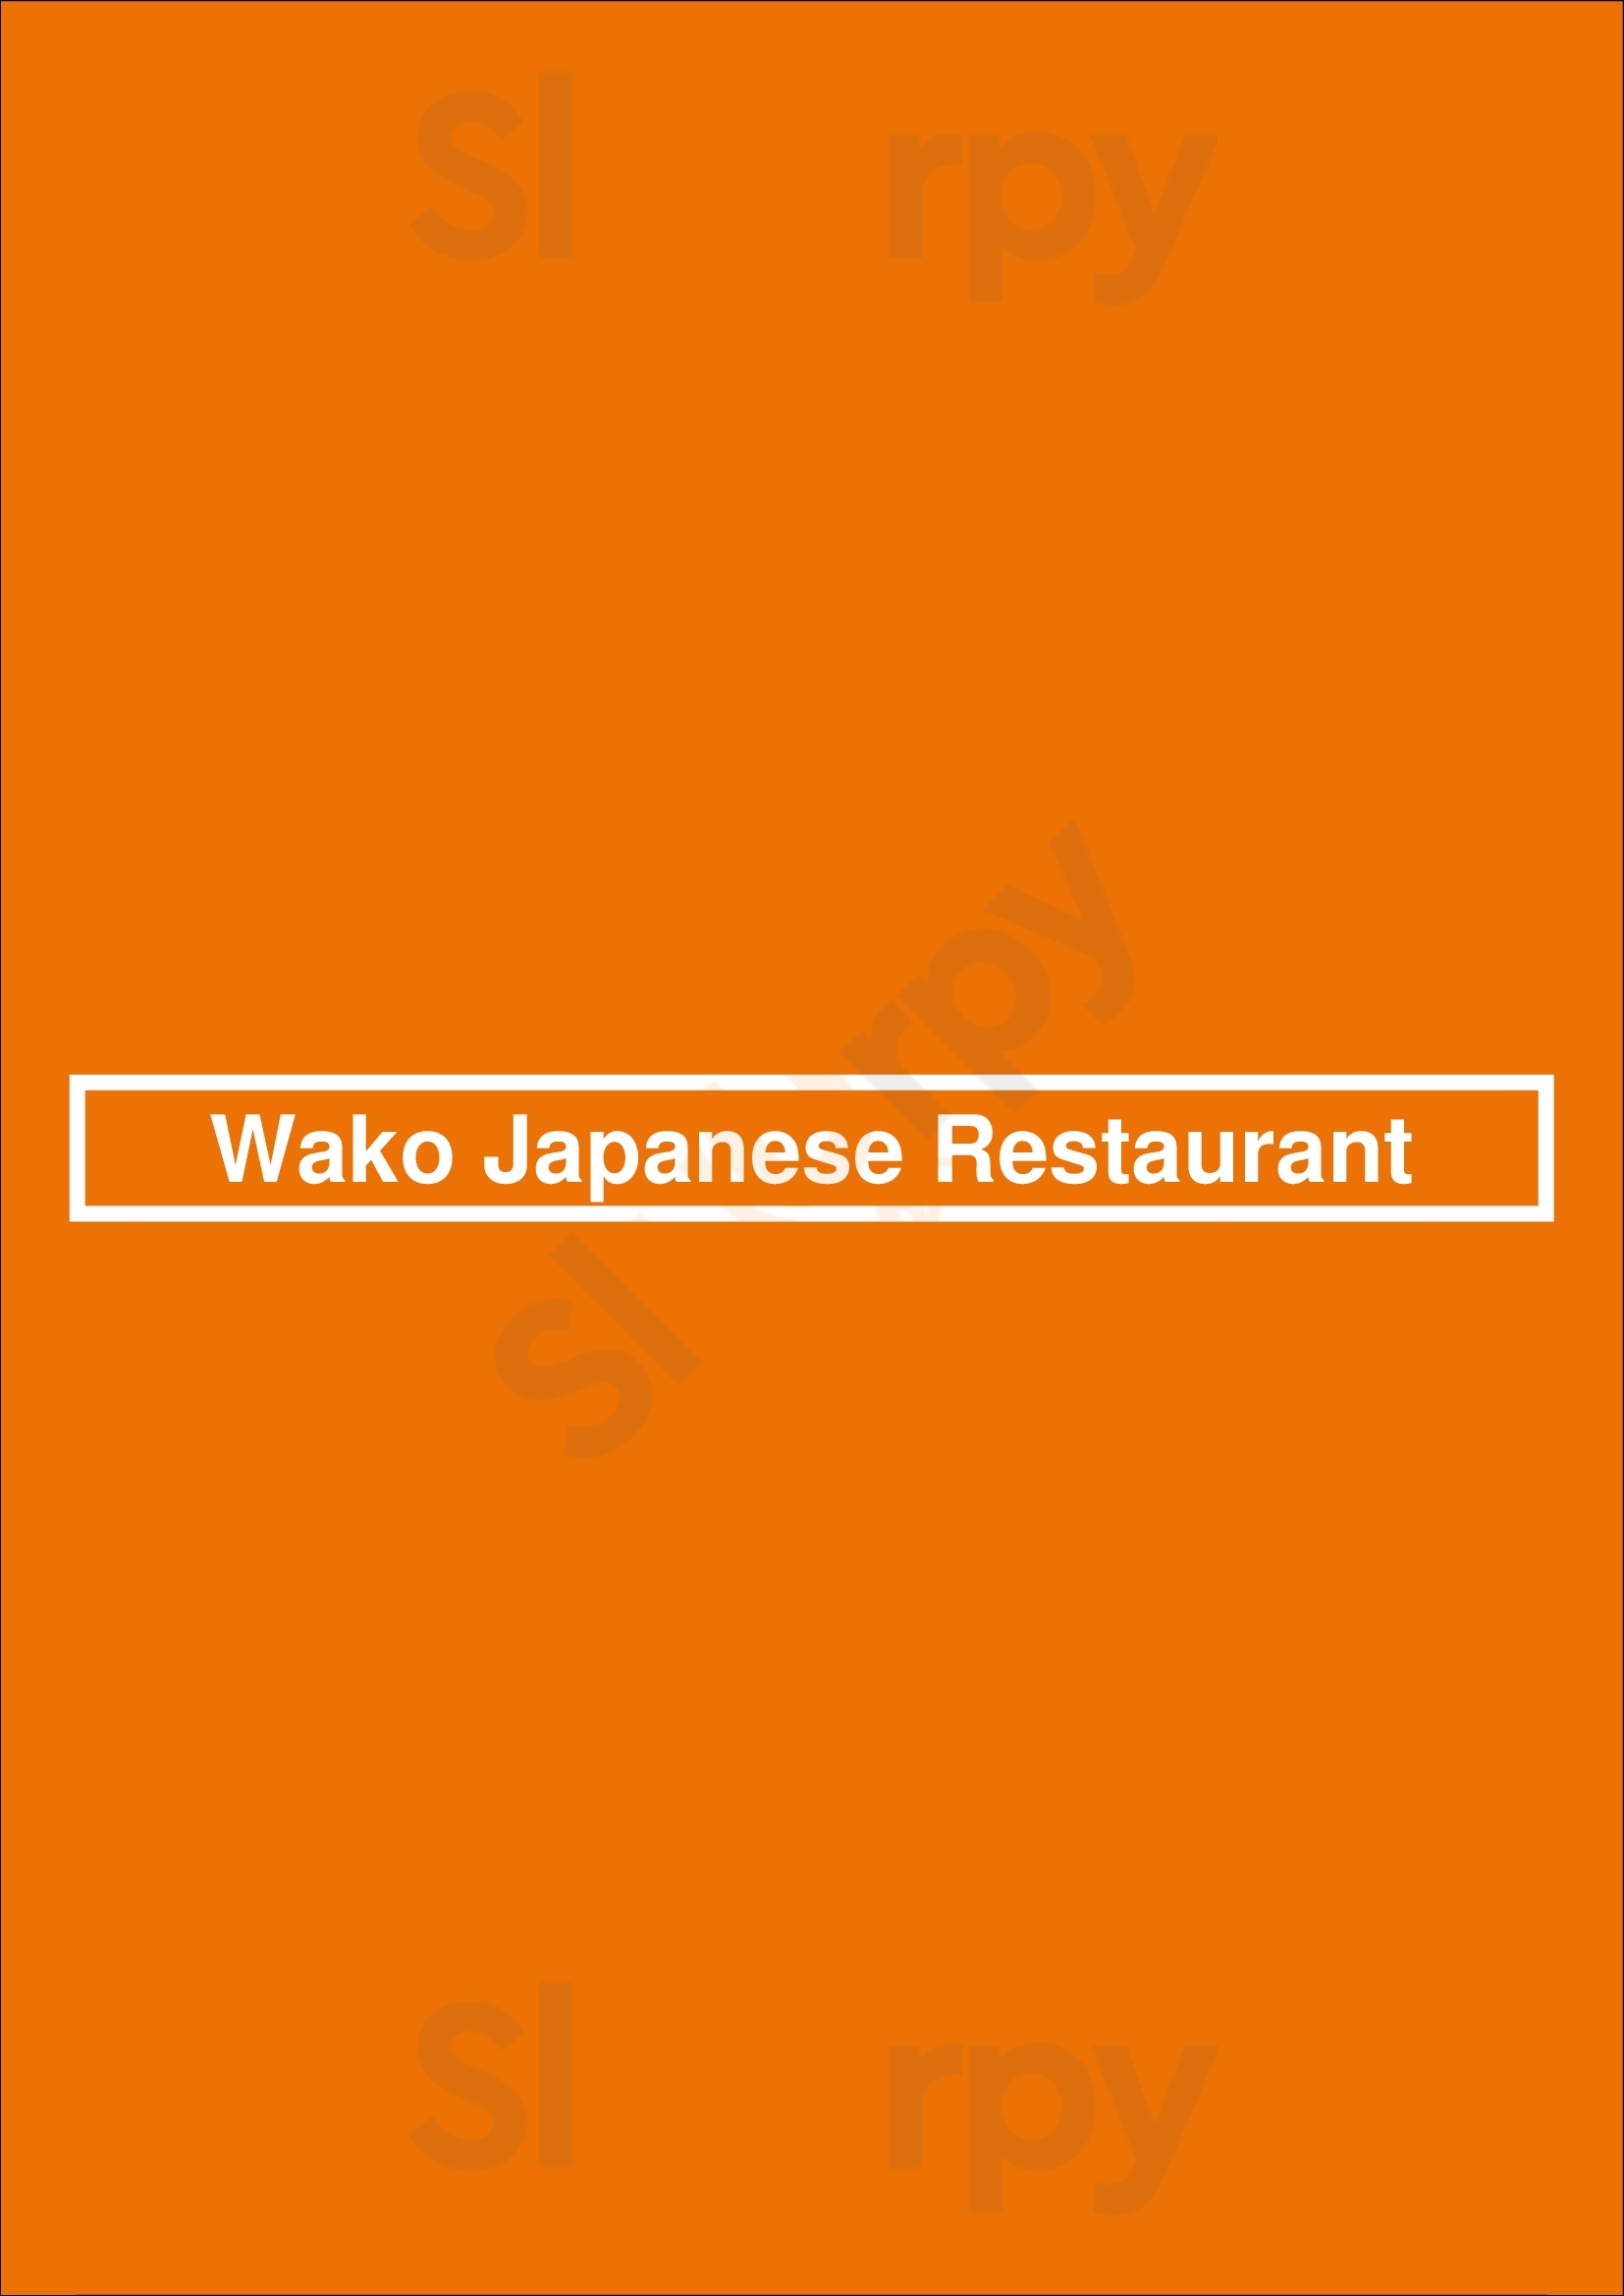 Wako Japanese Restaurant London Menu - 1